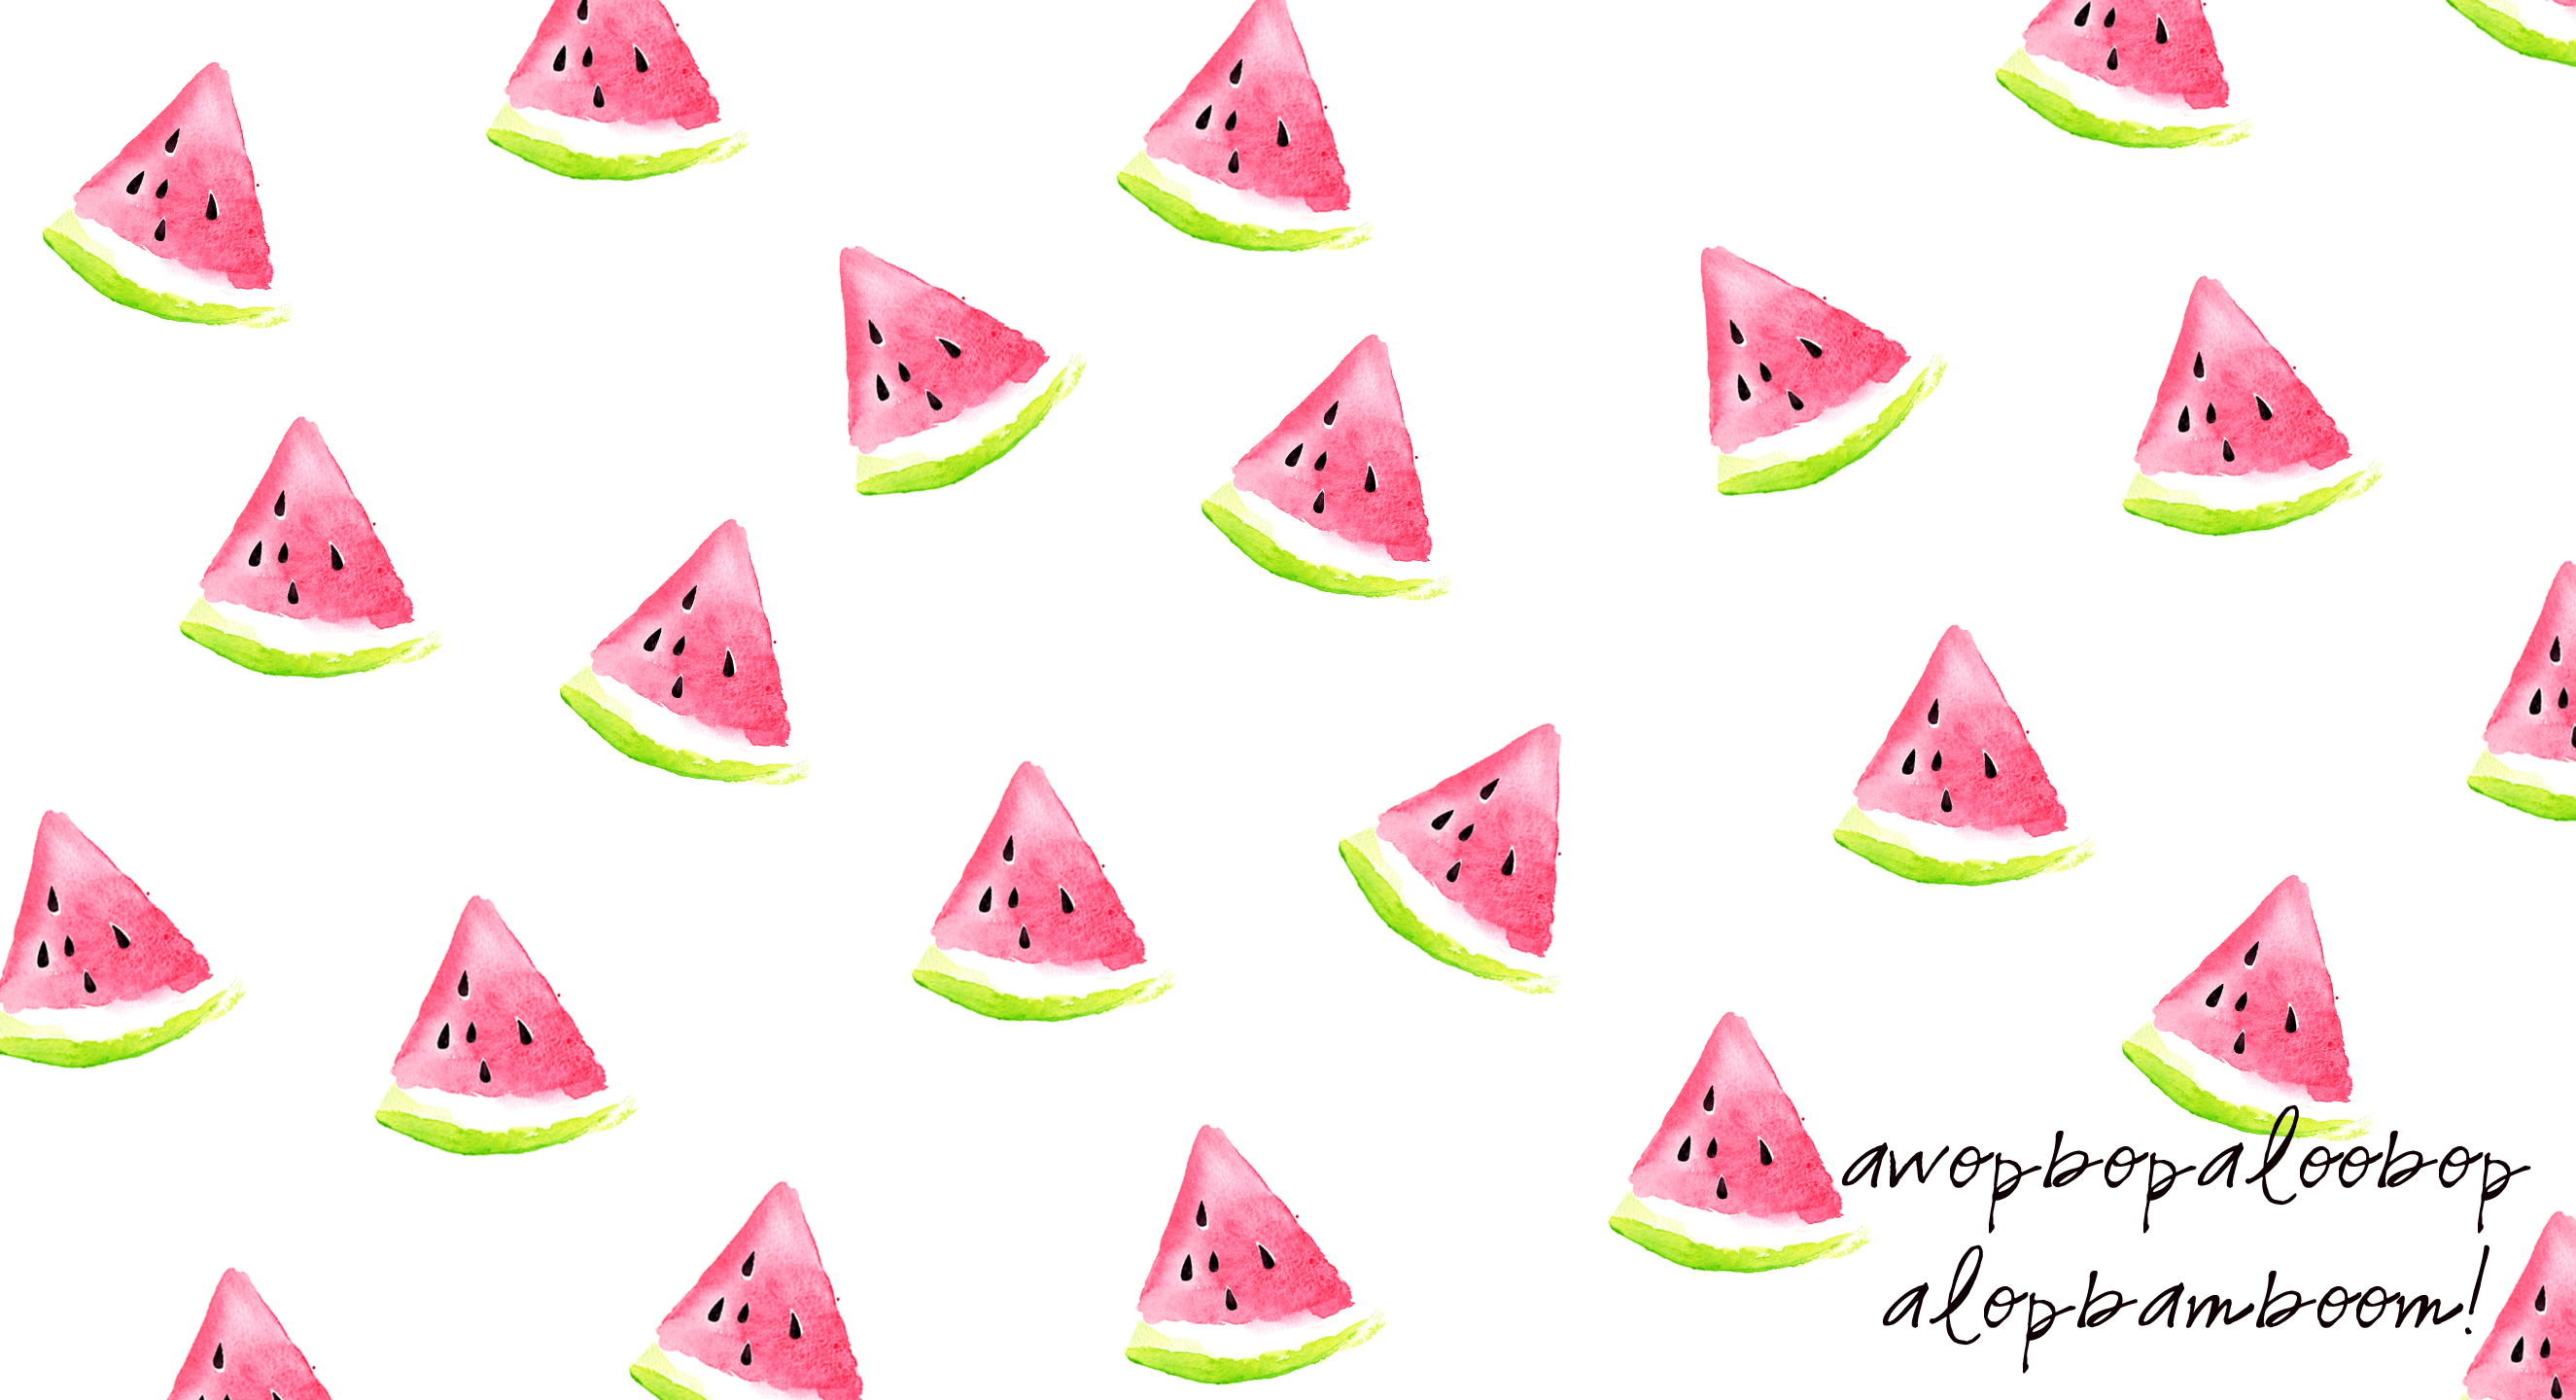 Watermelon Wallpaper For Your Iphone Ipad Desktop